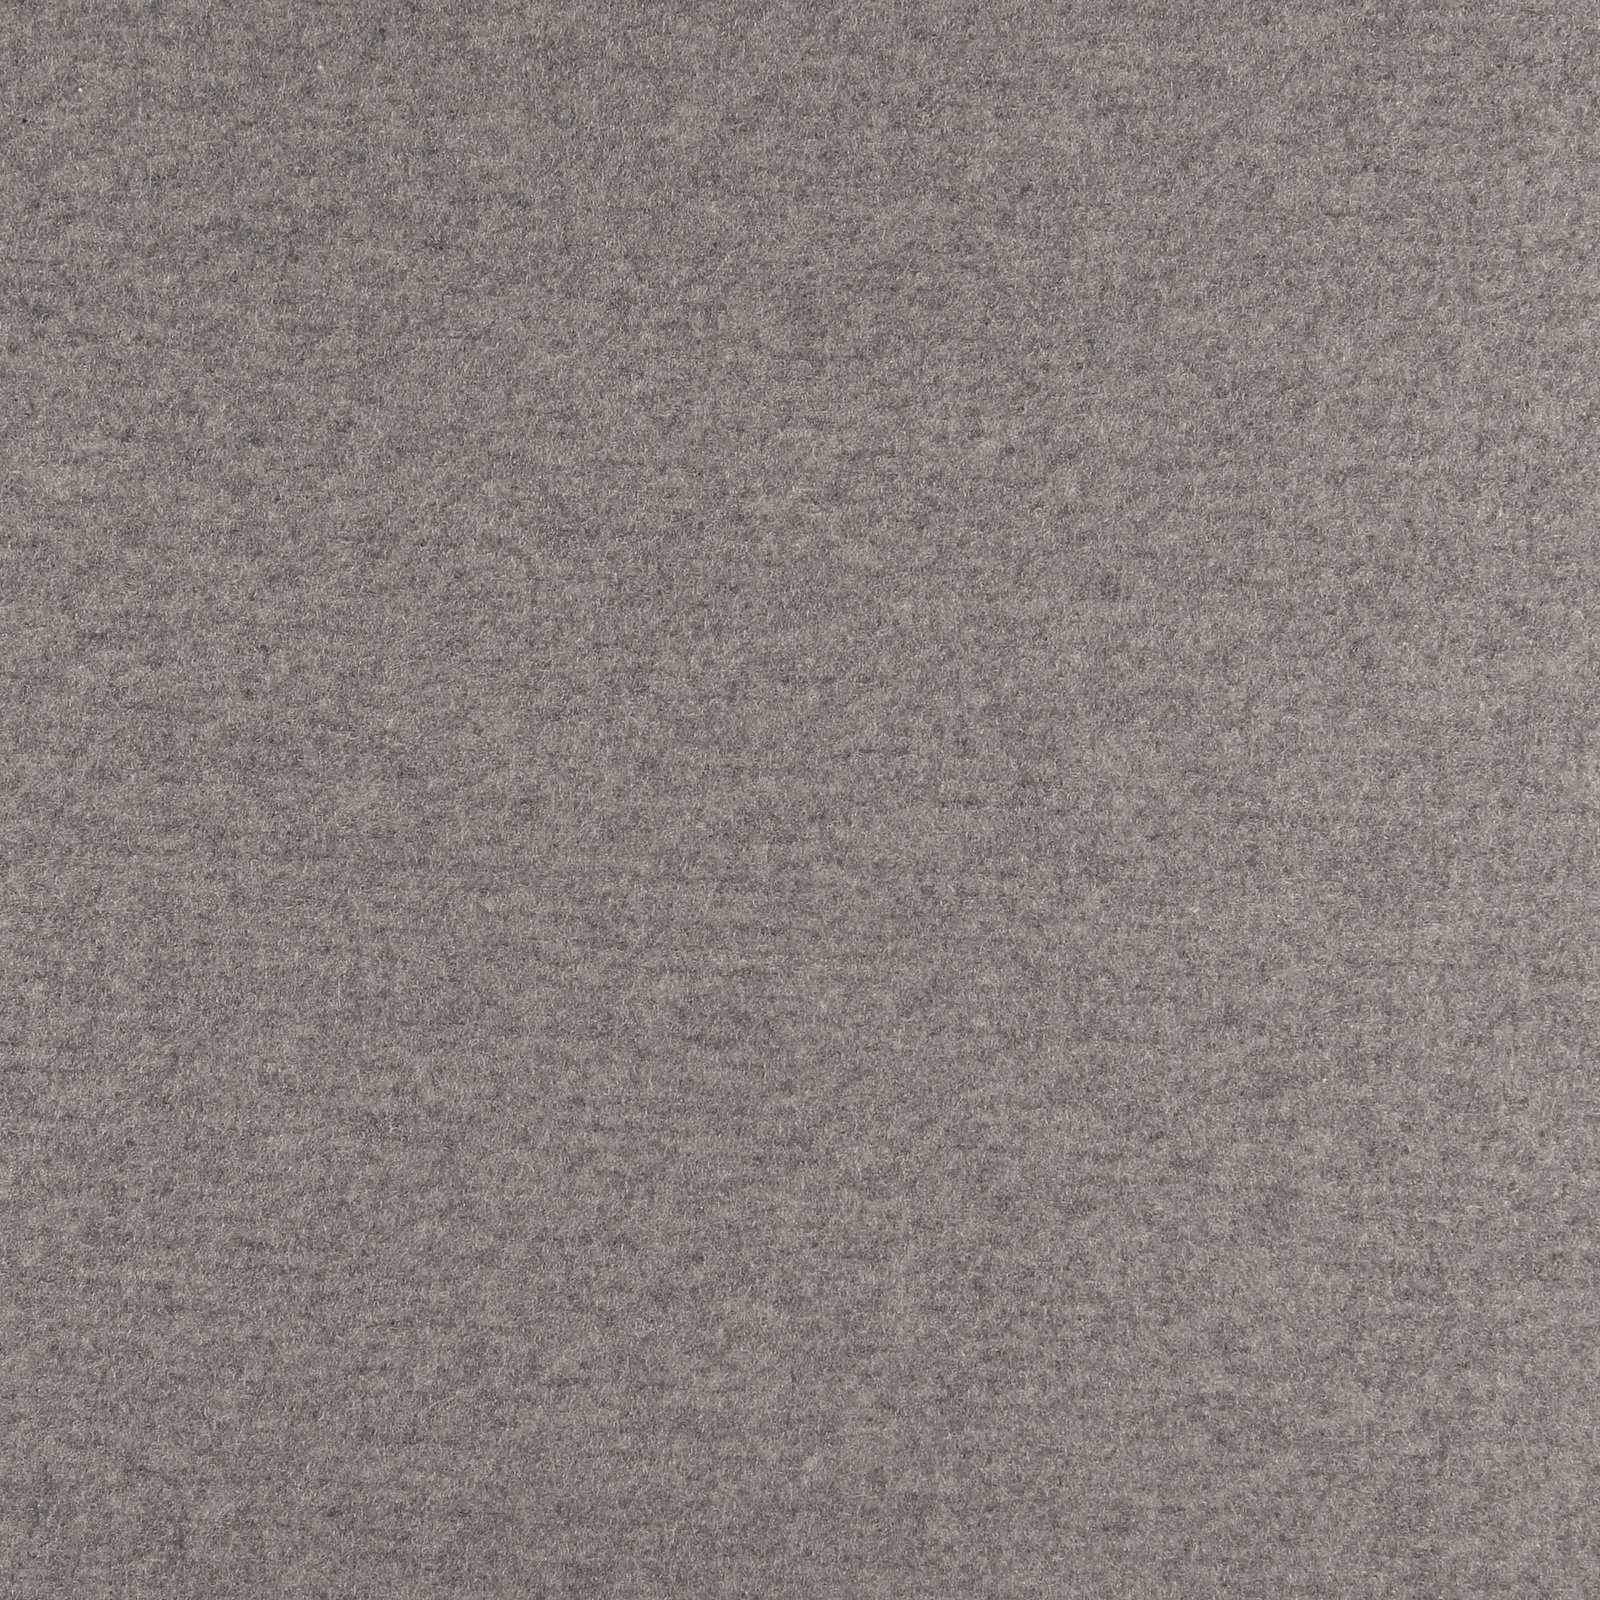 Wool felt light grey melange 310281_pack_solid